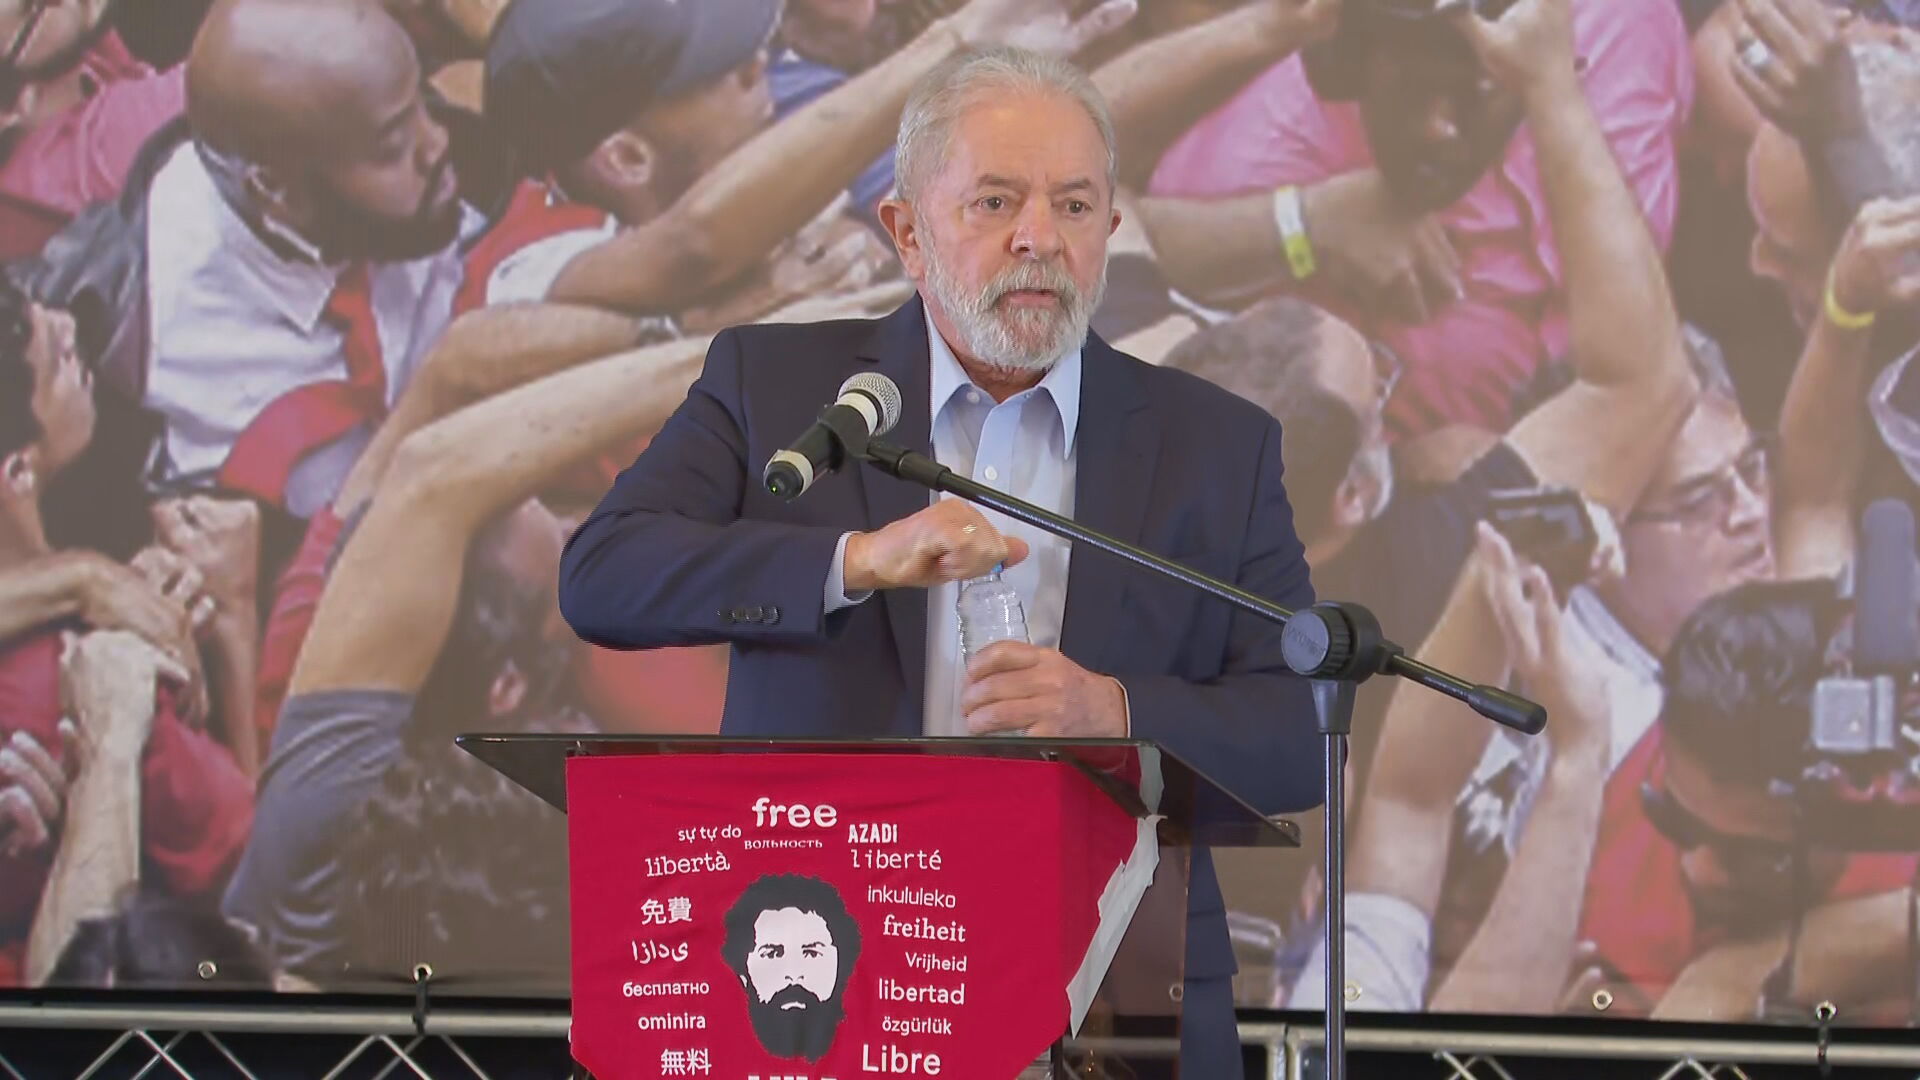 Ex-presidente Lula (PT) fala após ter condenações anuladas